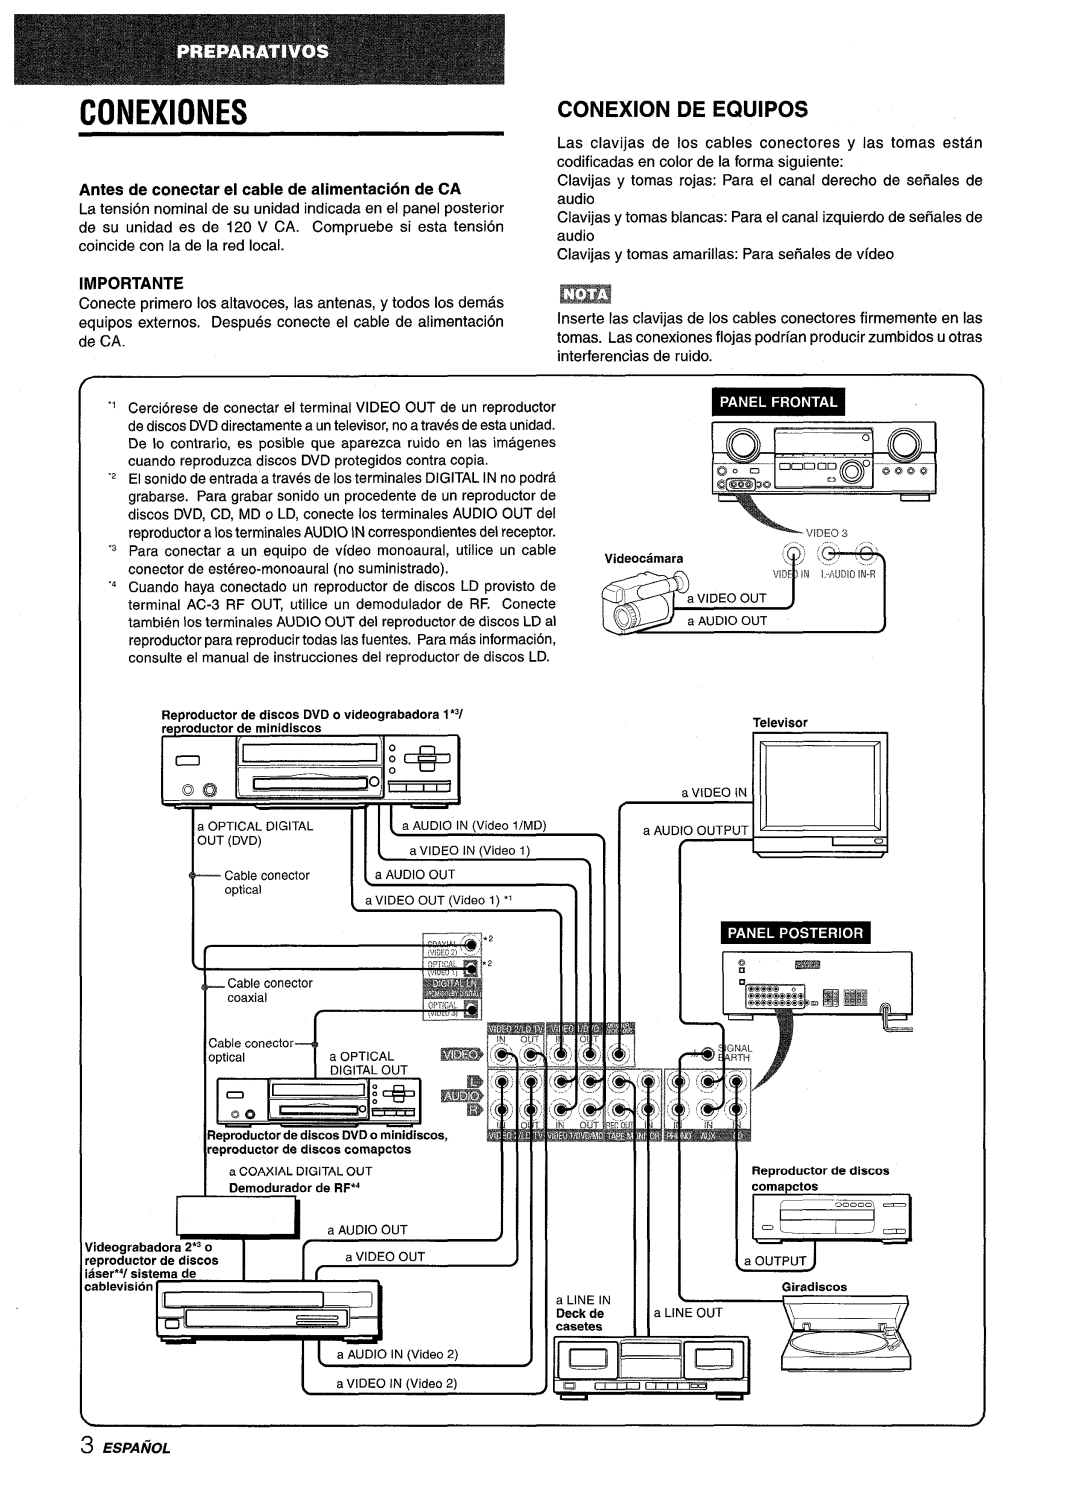 Sony AV-DV75 manual Conexiones, Conexion De Equipos, Antes de conectar el cable de alimentacion de CA, Importante 